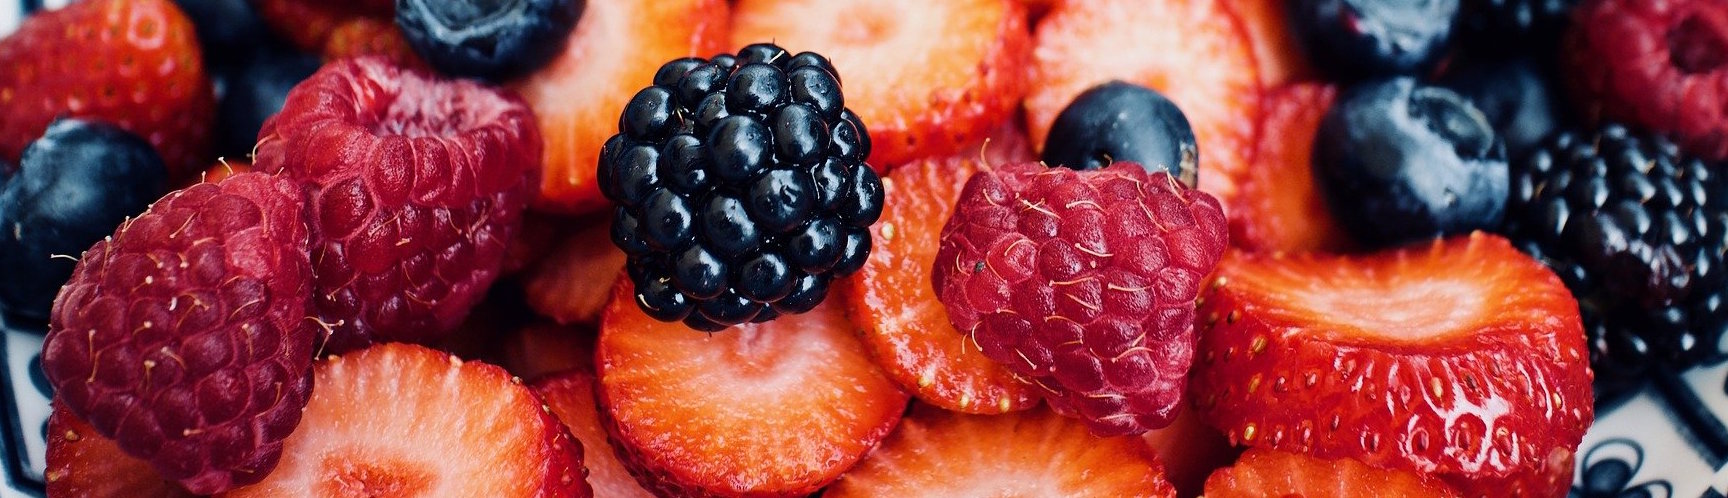 Vielfältige gesunde Früchte